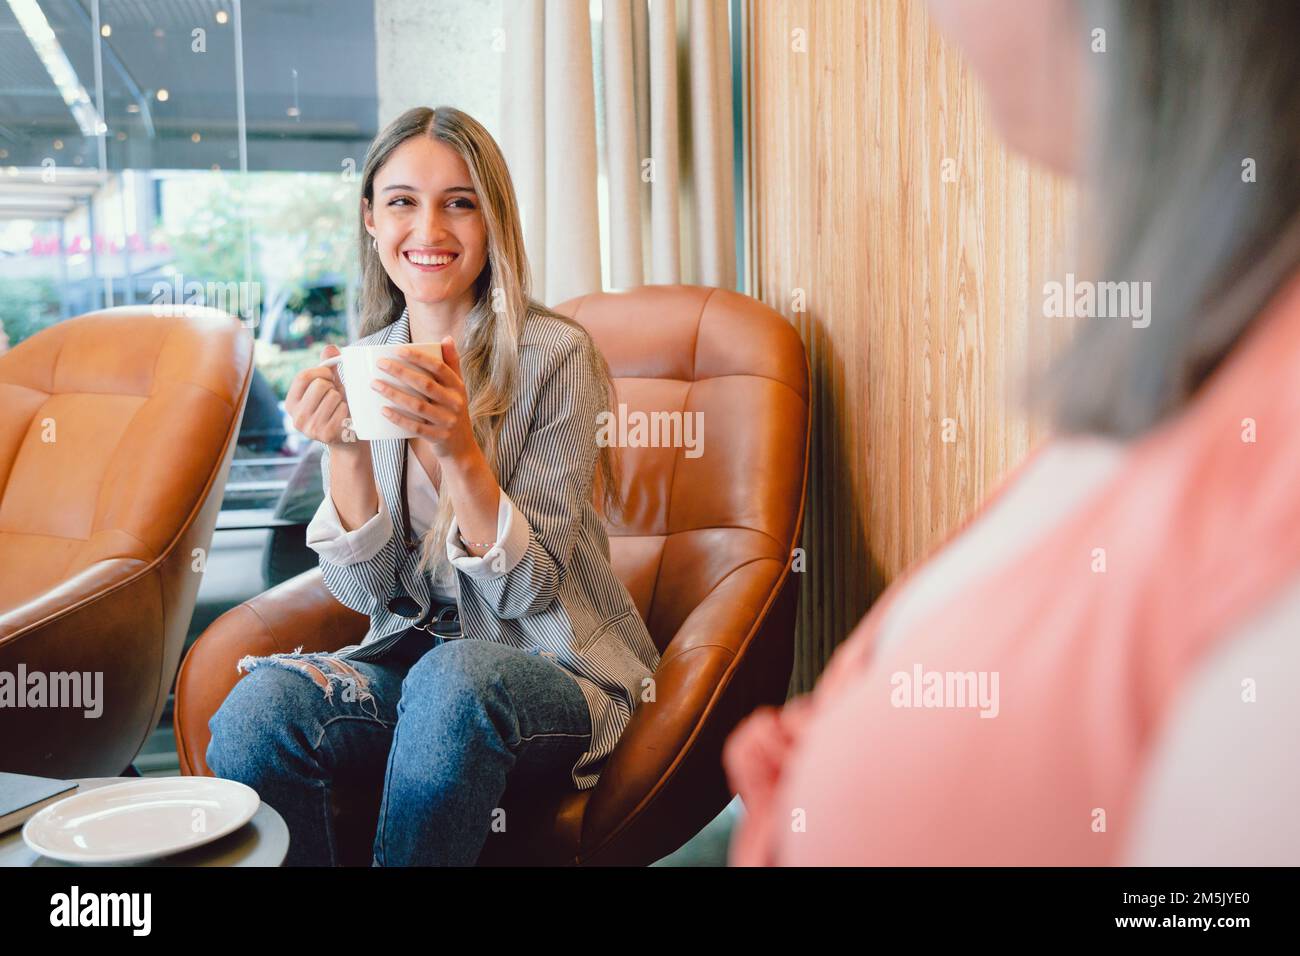 Une jeune femme heureuse assise sur un fauteuil, parlant et partageant un café avec un ami dans un lieu de travail ouvert Banque D'Images